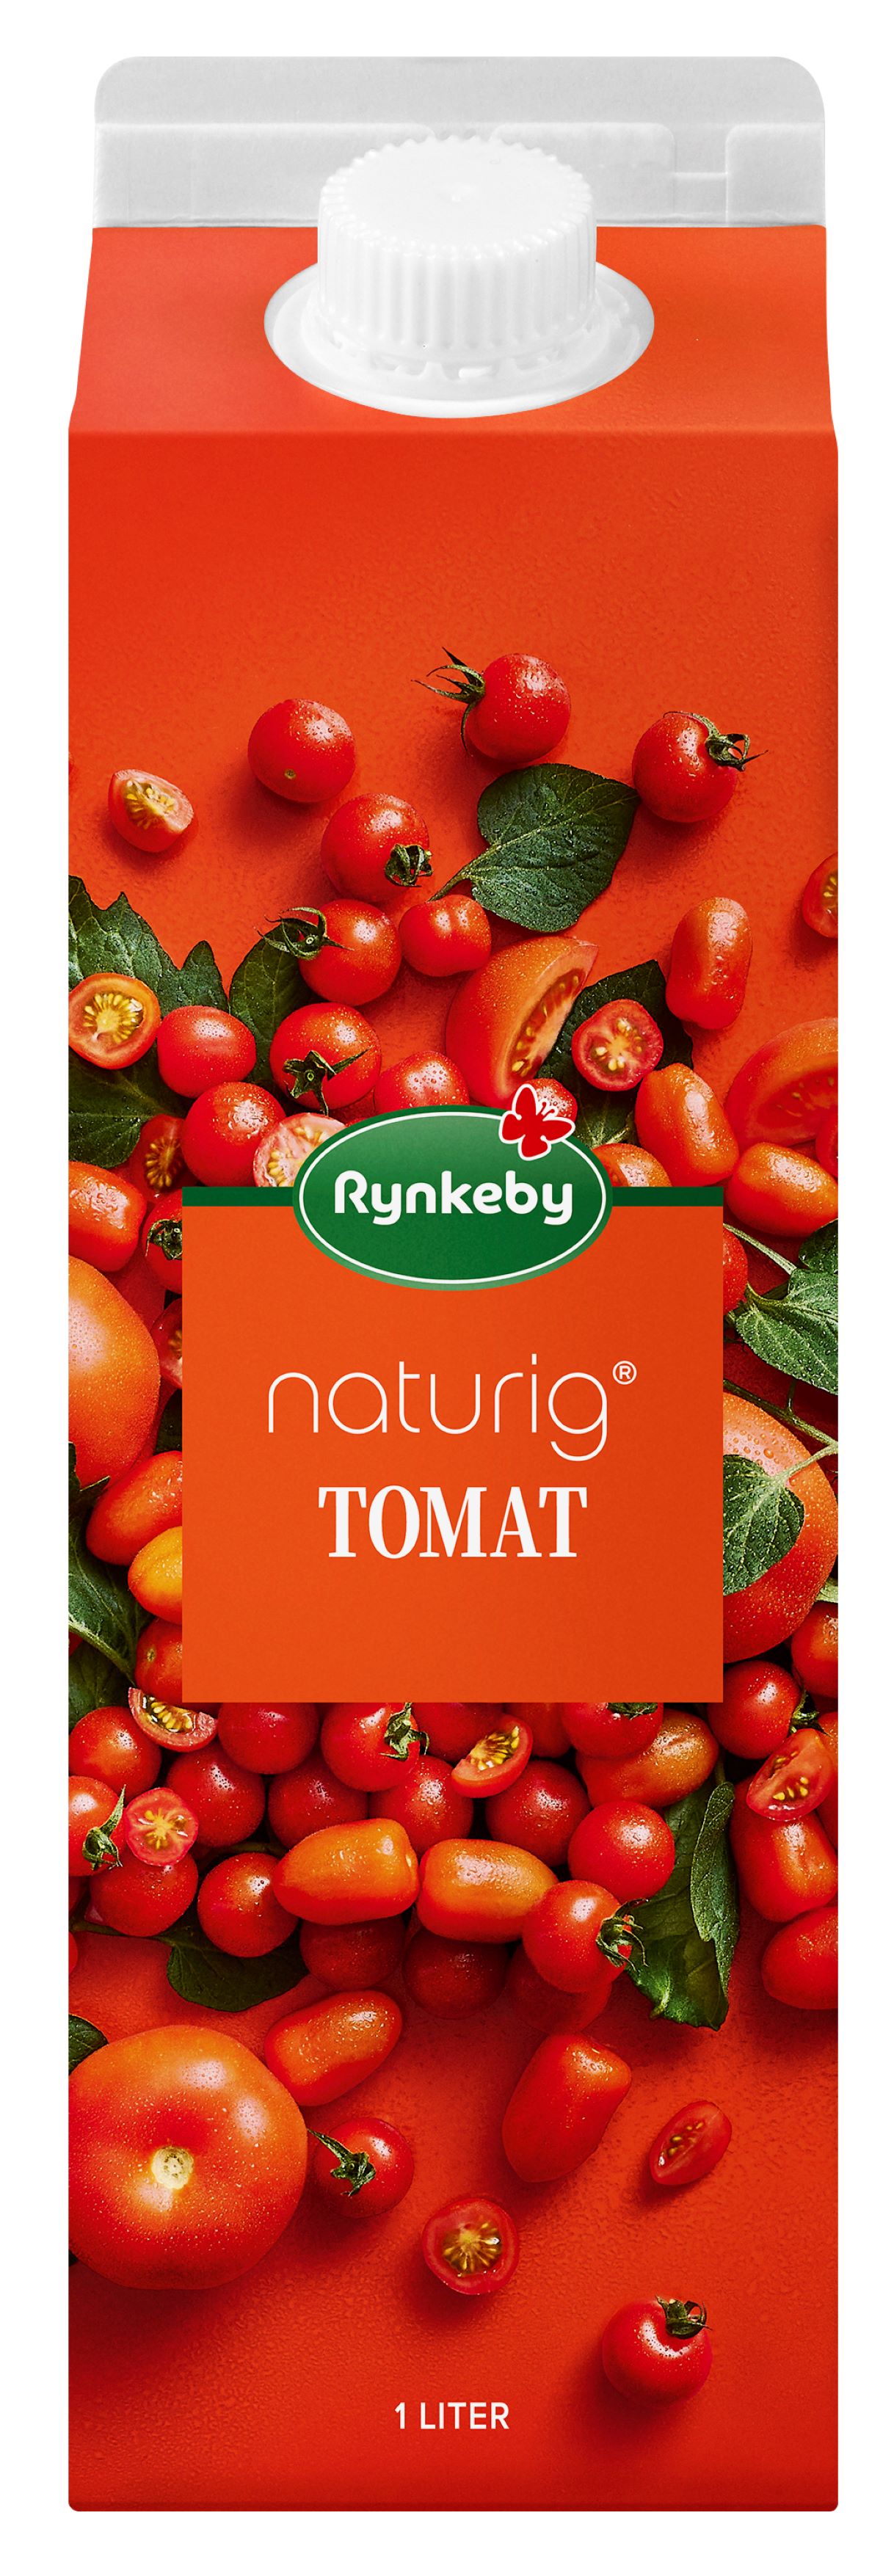 Tomatjuice rynkeby 1 lt